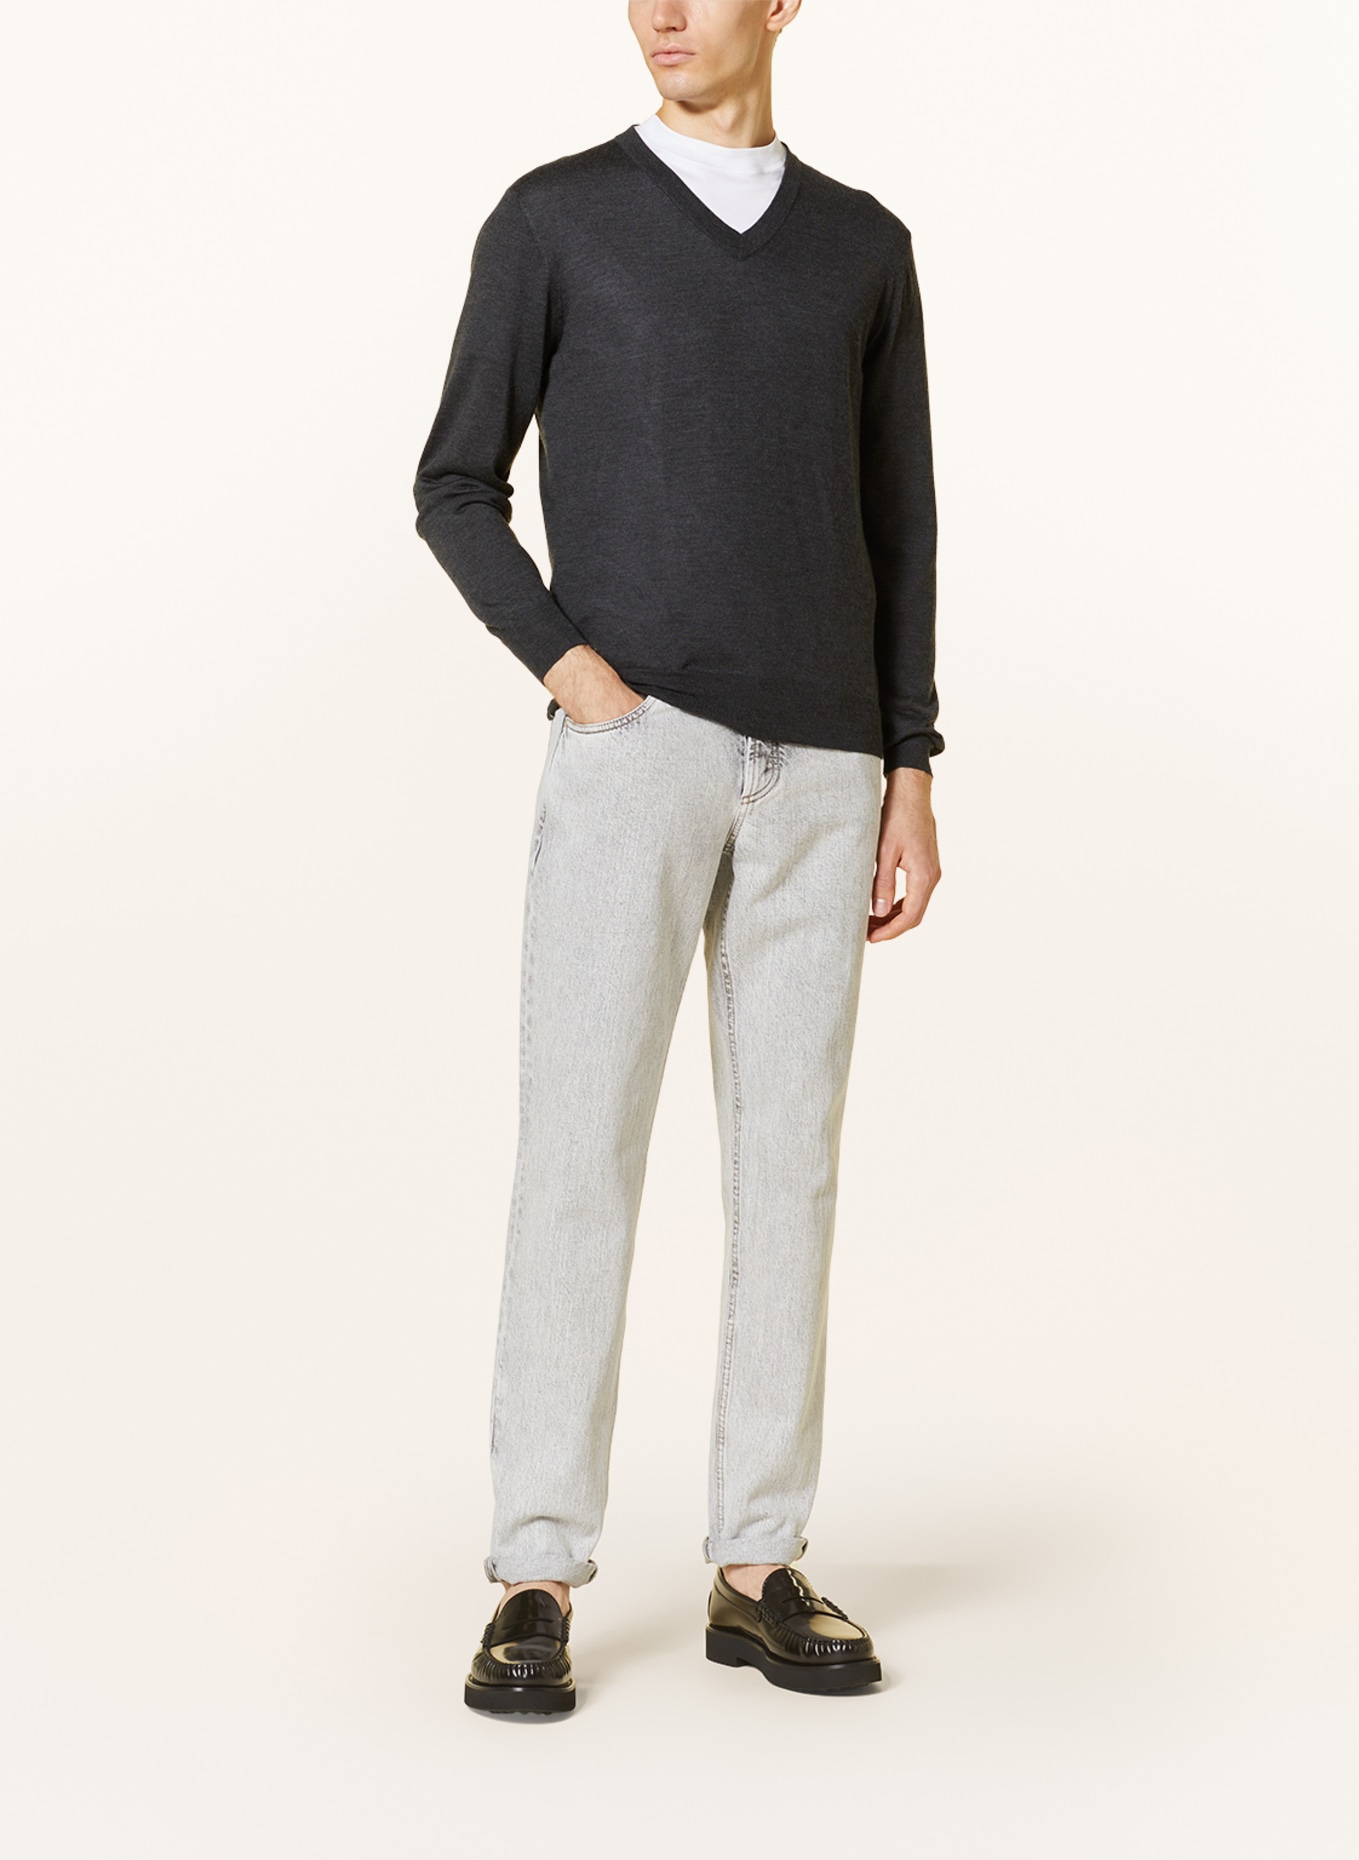 FIORONI Cashmere sweater, Color: DARK GRAY (Image 2)